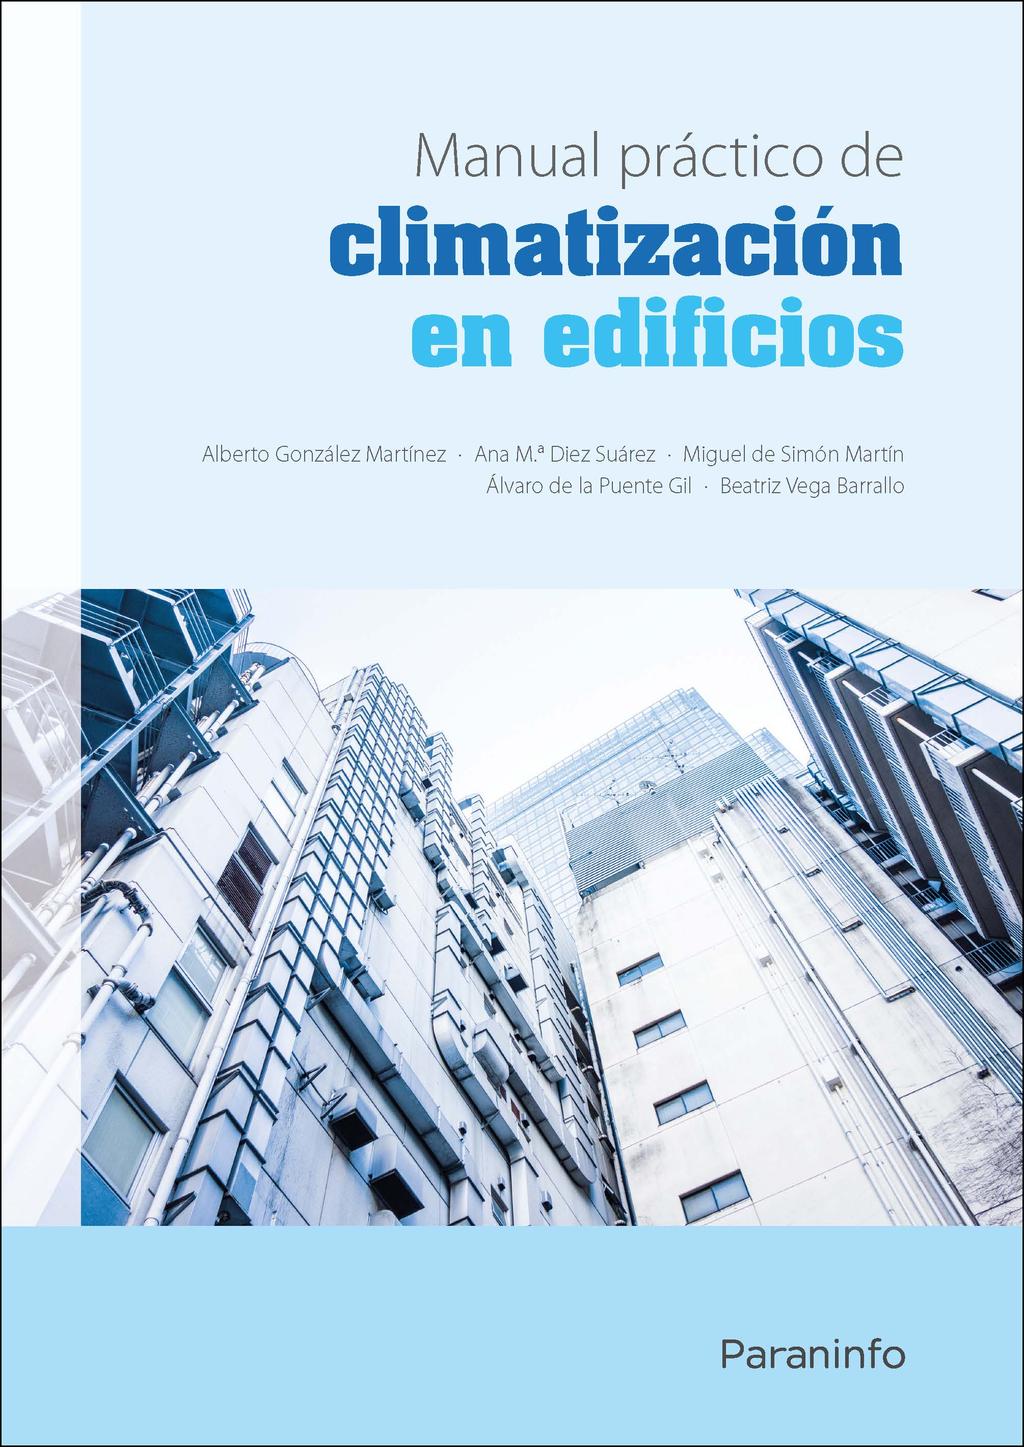 Manual práctico de climatización en edificios Editorial: Paraninfo Autor: ALBERTO GONZÁLEZ MARTÍNEZ, ANA MARÍA DIEZ SUÁREZ, MIGUEL DE SIMÓN MARTÍN, BEATRIZ VEGA BARRALLO, ALVARO DE LA PUENTE GIL